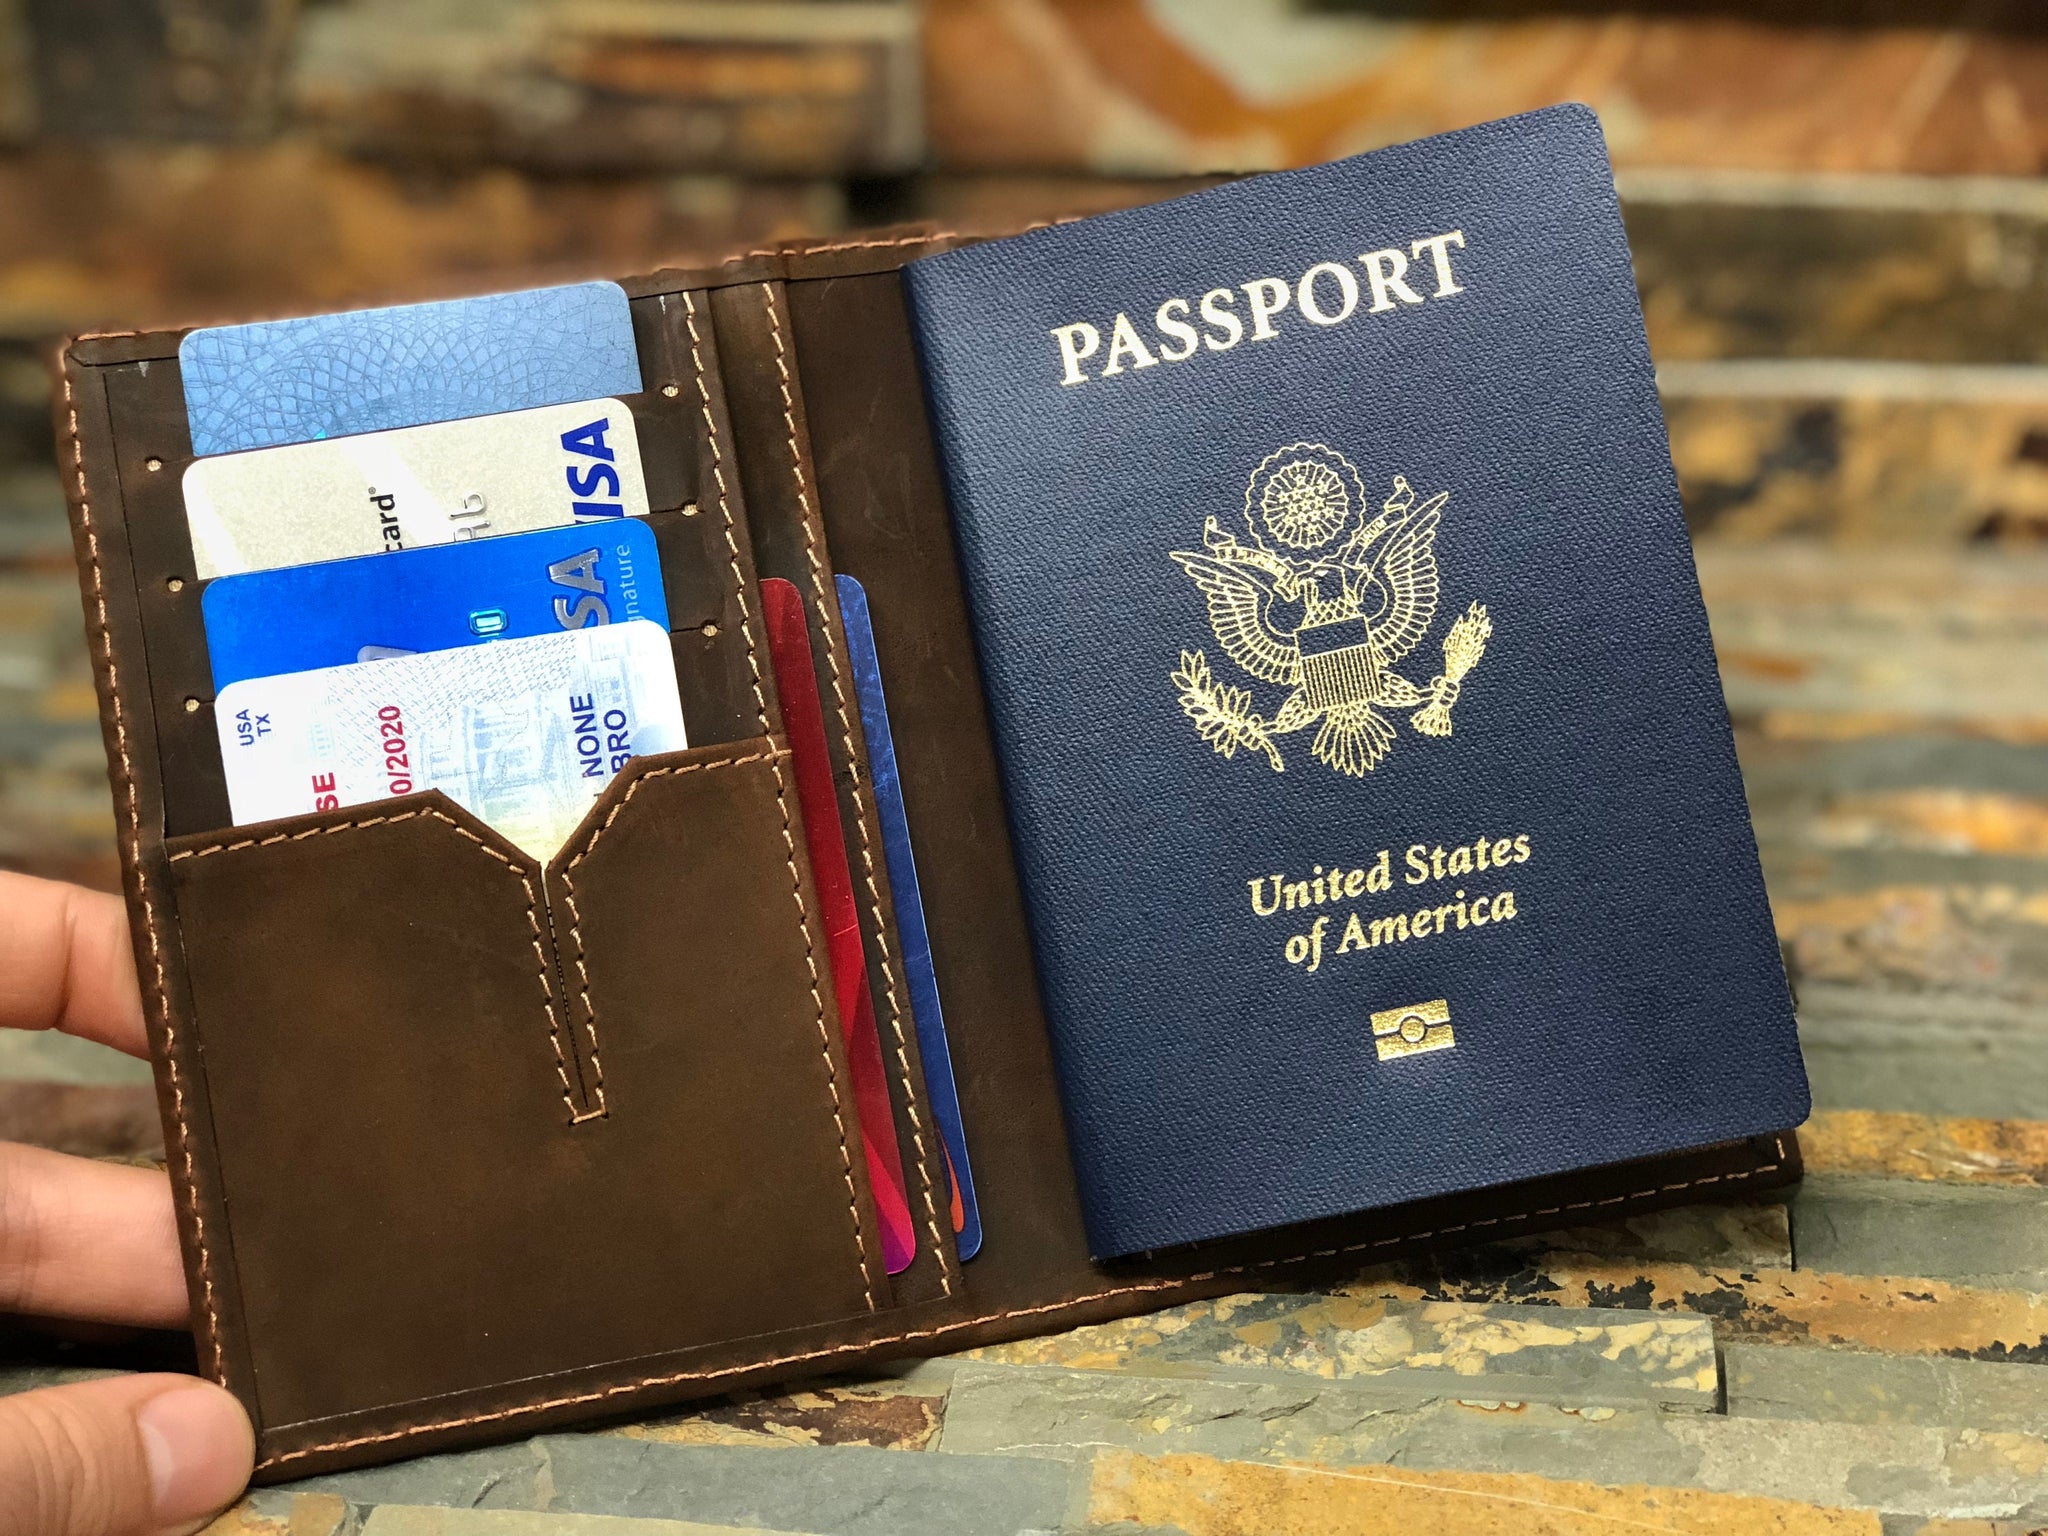 Leather Passport Holder Leather Passport Wallettravel 